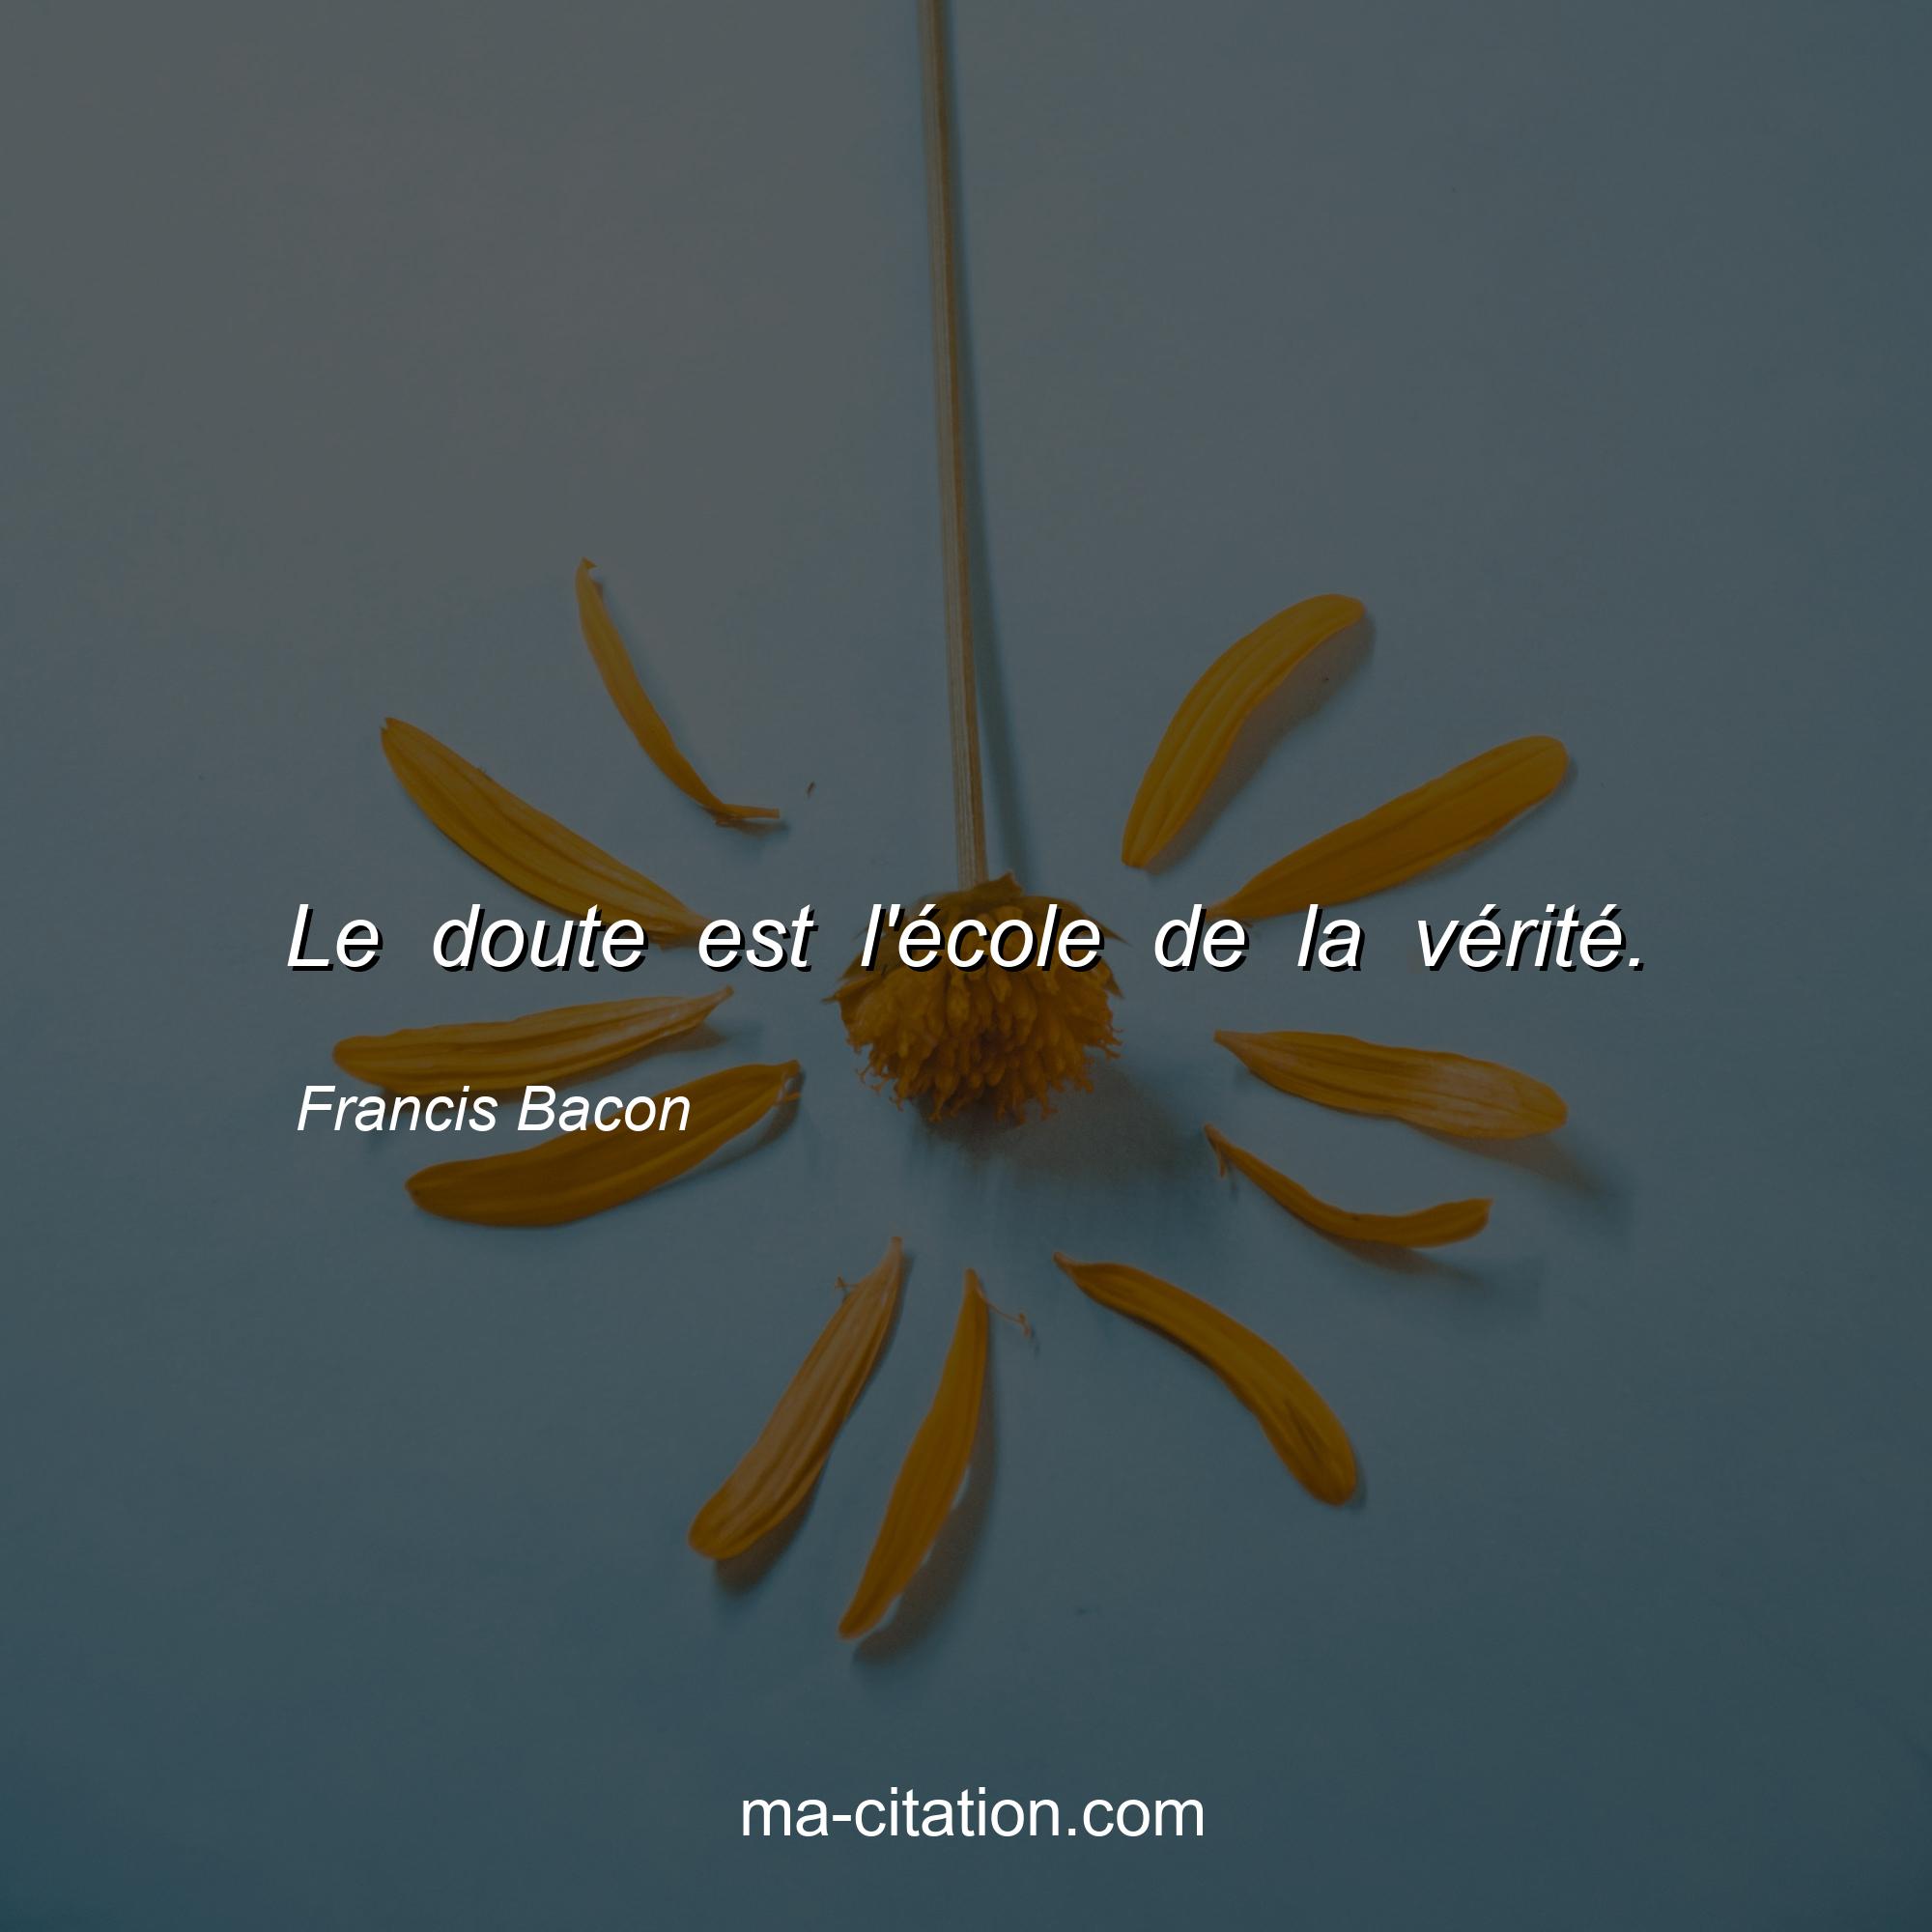 Francis Bacon : Le doute est l'école de la vérité.